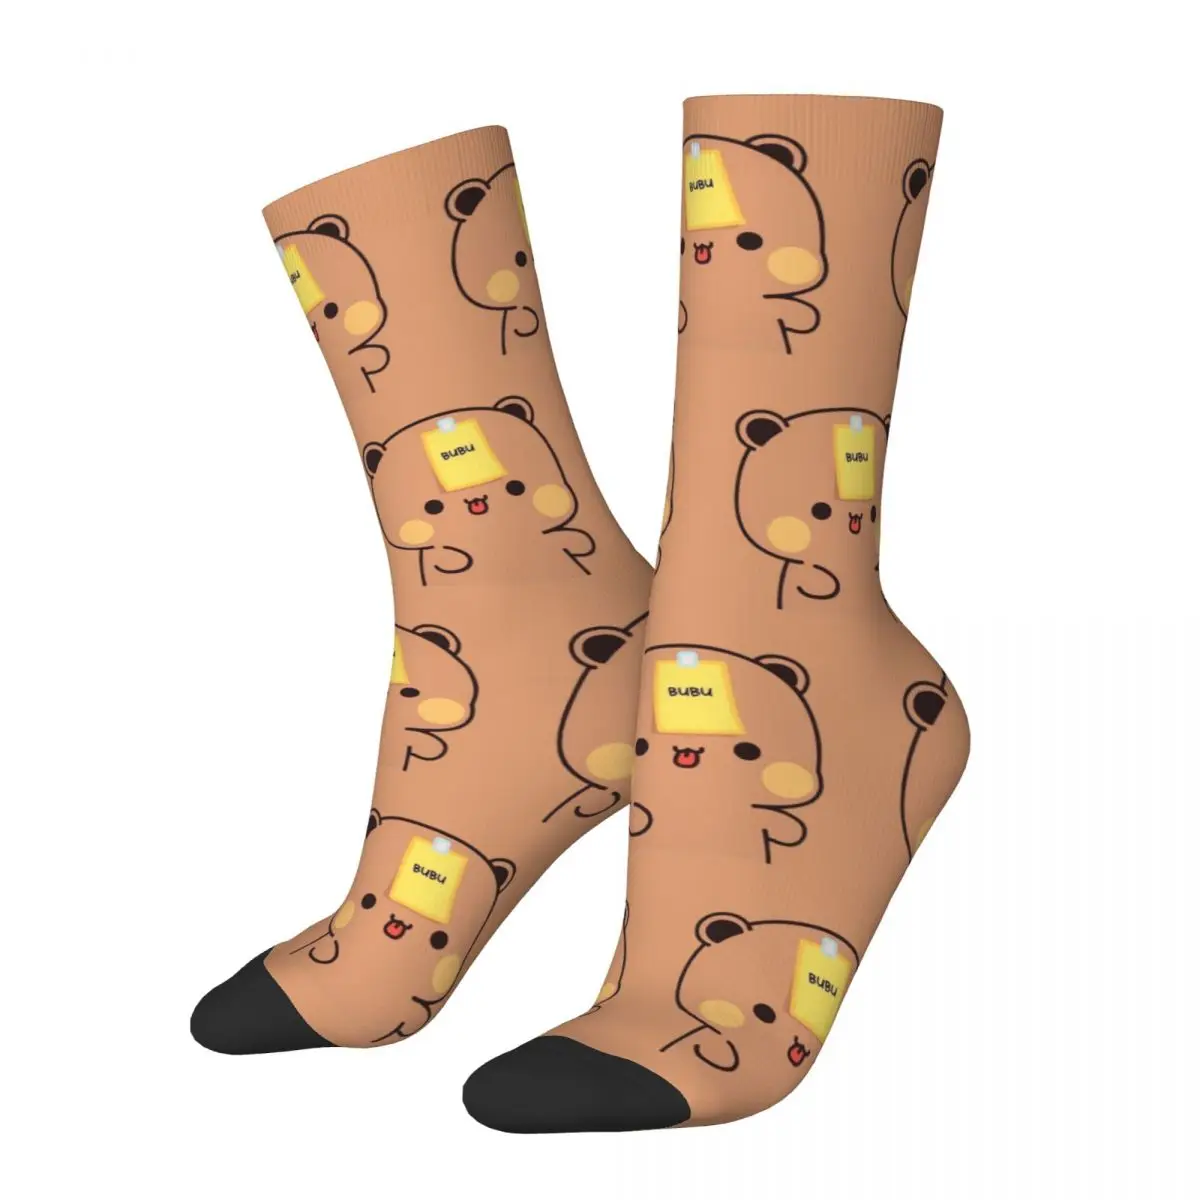 

Счастливые смешные мужские носки сумасшедшие Bubu и Dudu носки из полиэстера милые женские носки с мультяшным графическим рисунком весна лето осень зима